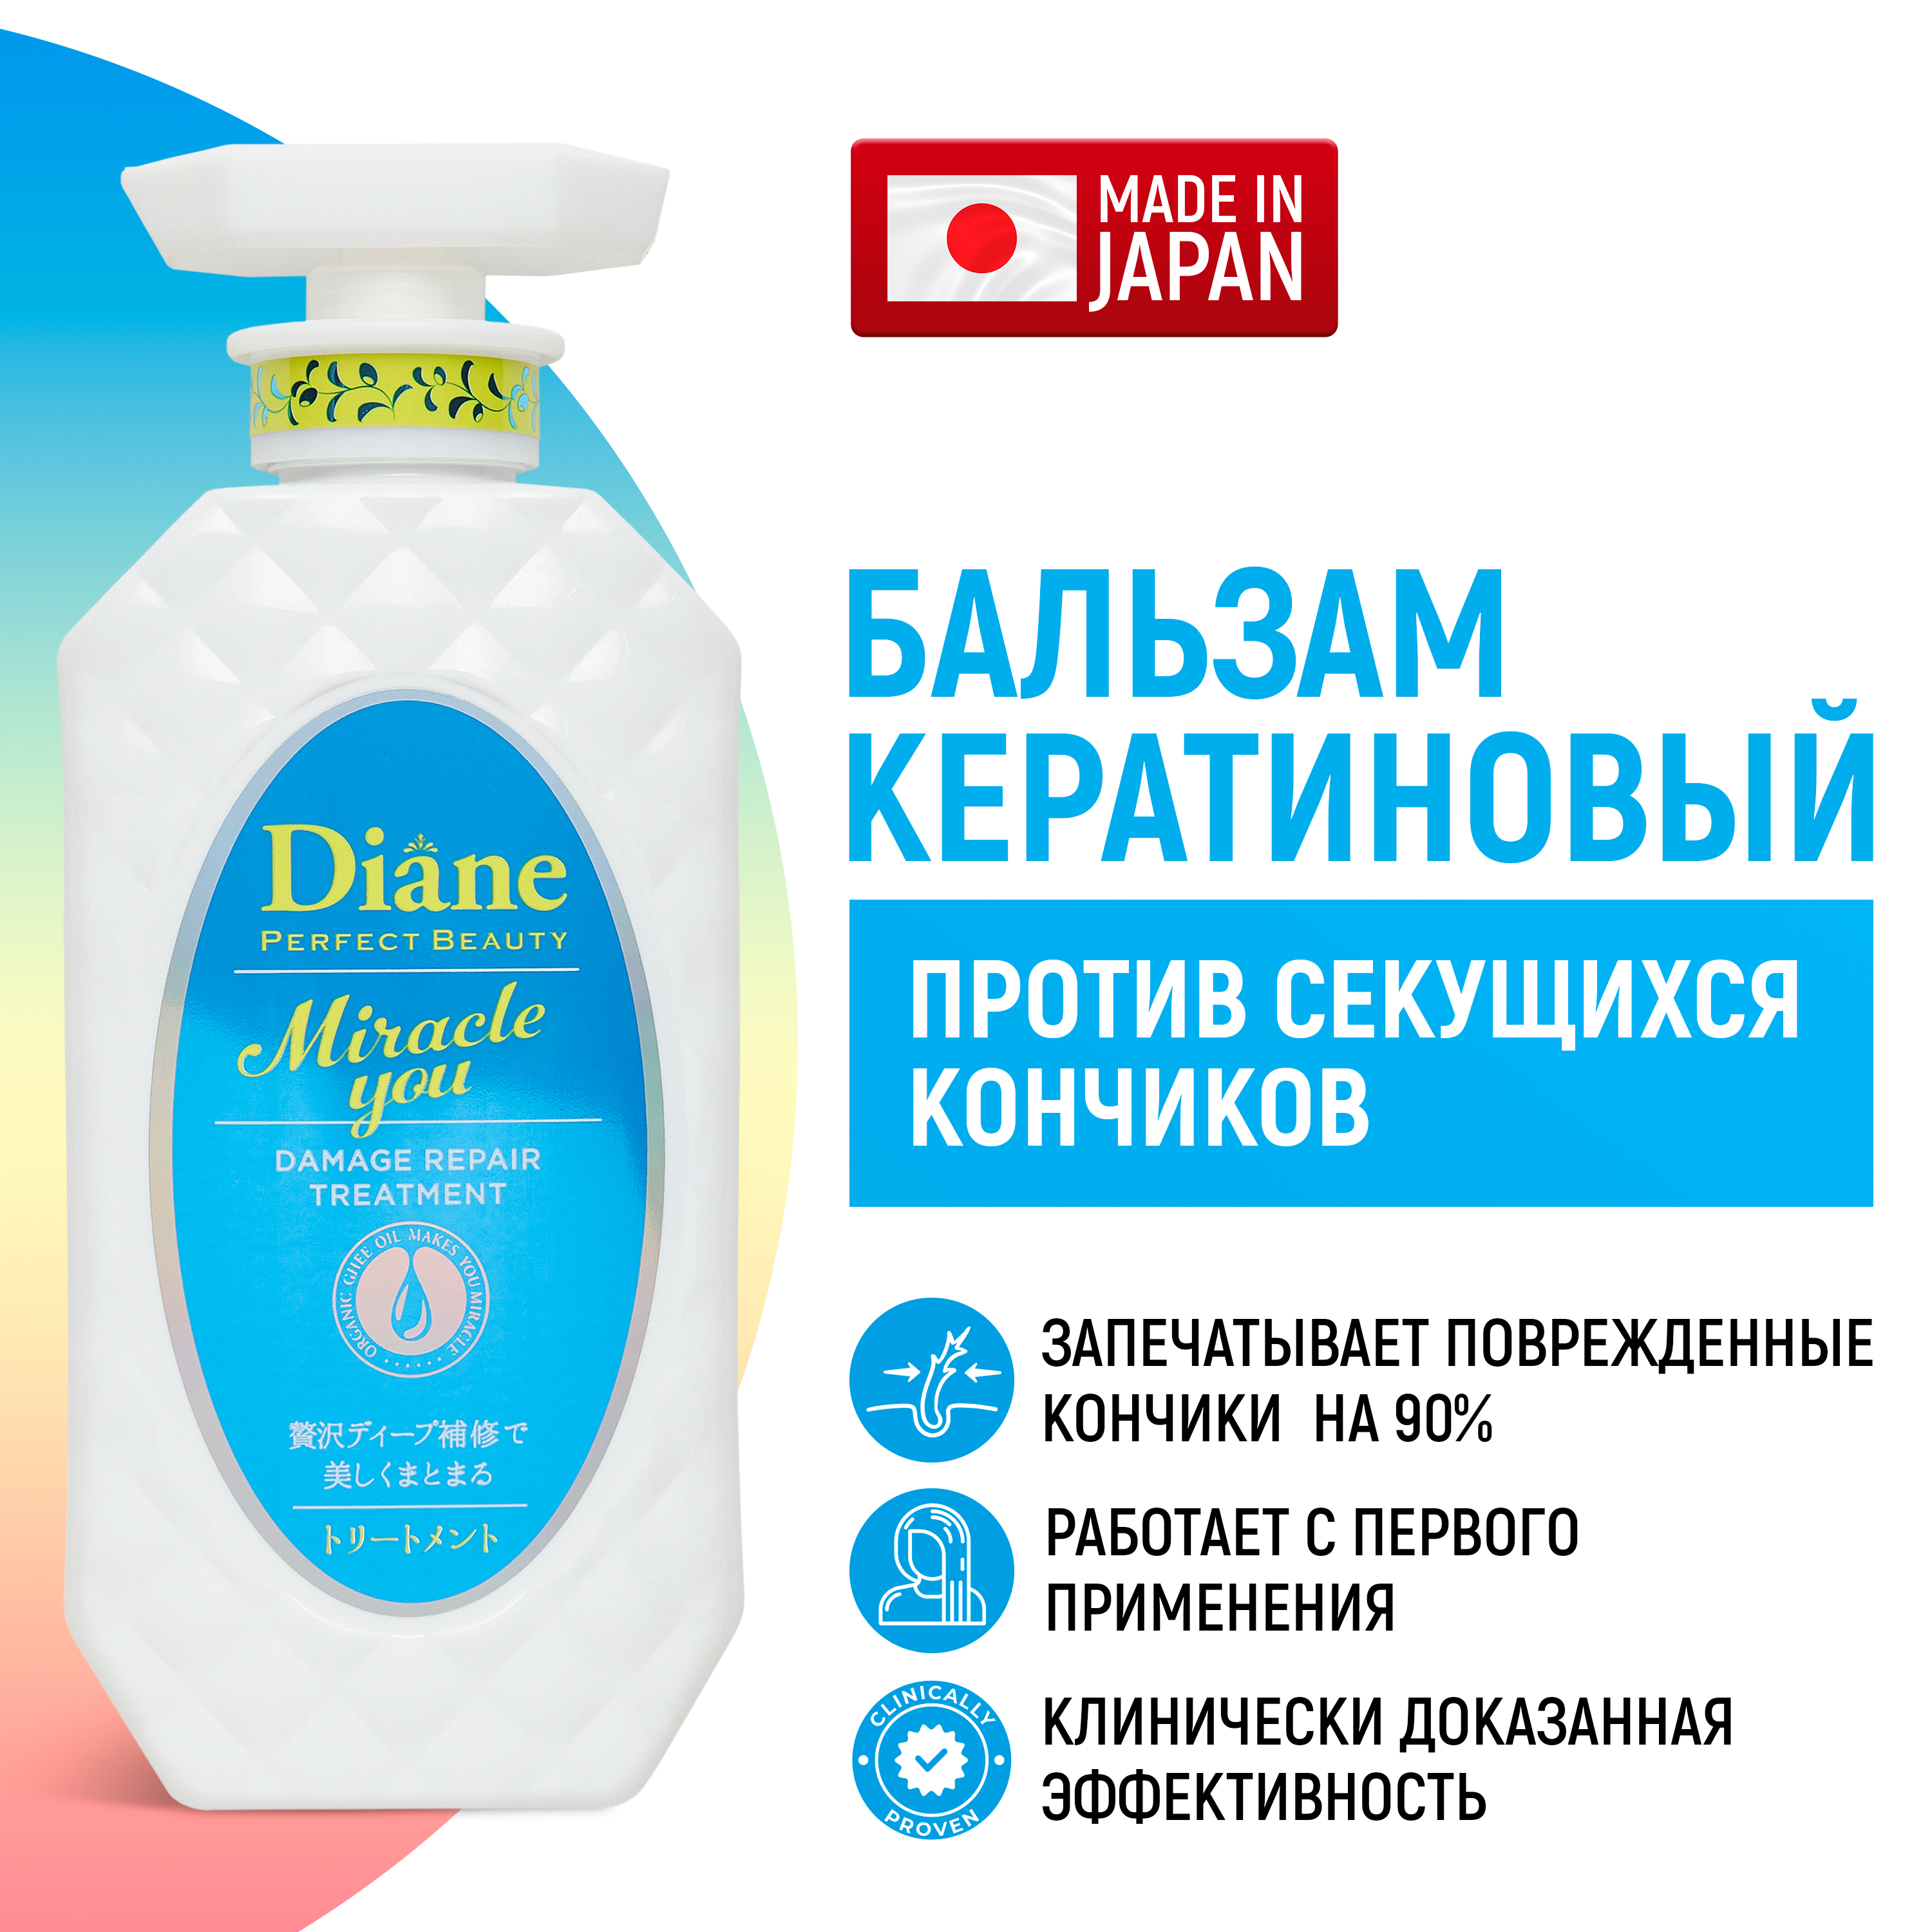 Бальзам Moist Diane Perfect Beauty Miracle You кератиновый для восстановления секущихся moist diane series extra moist